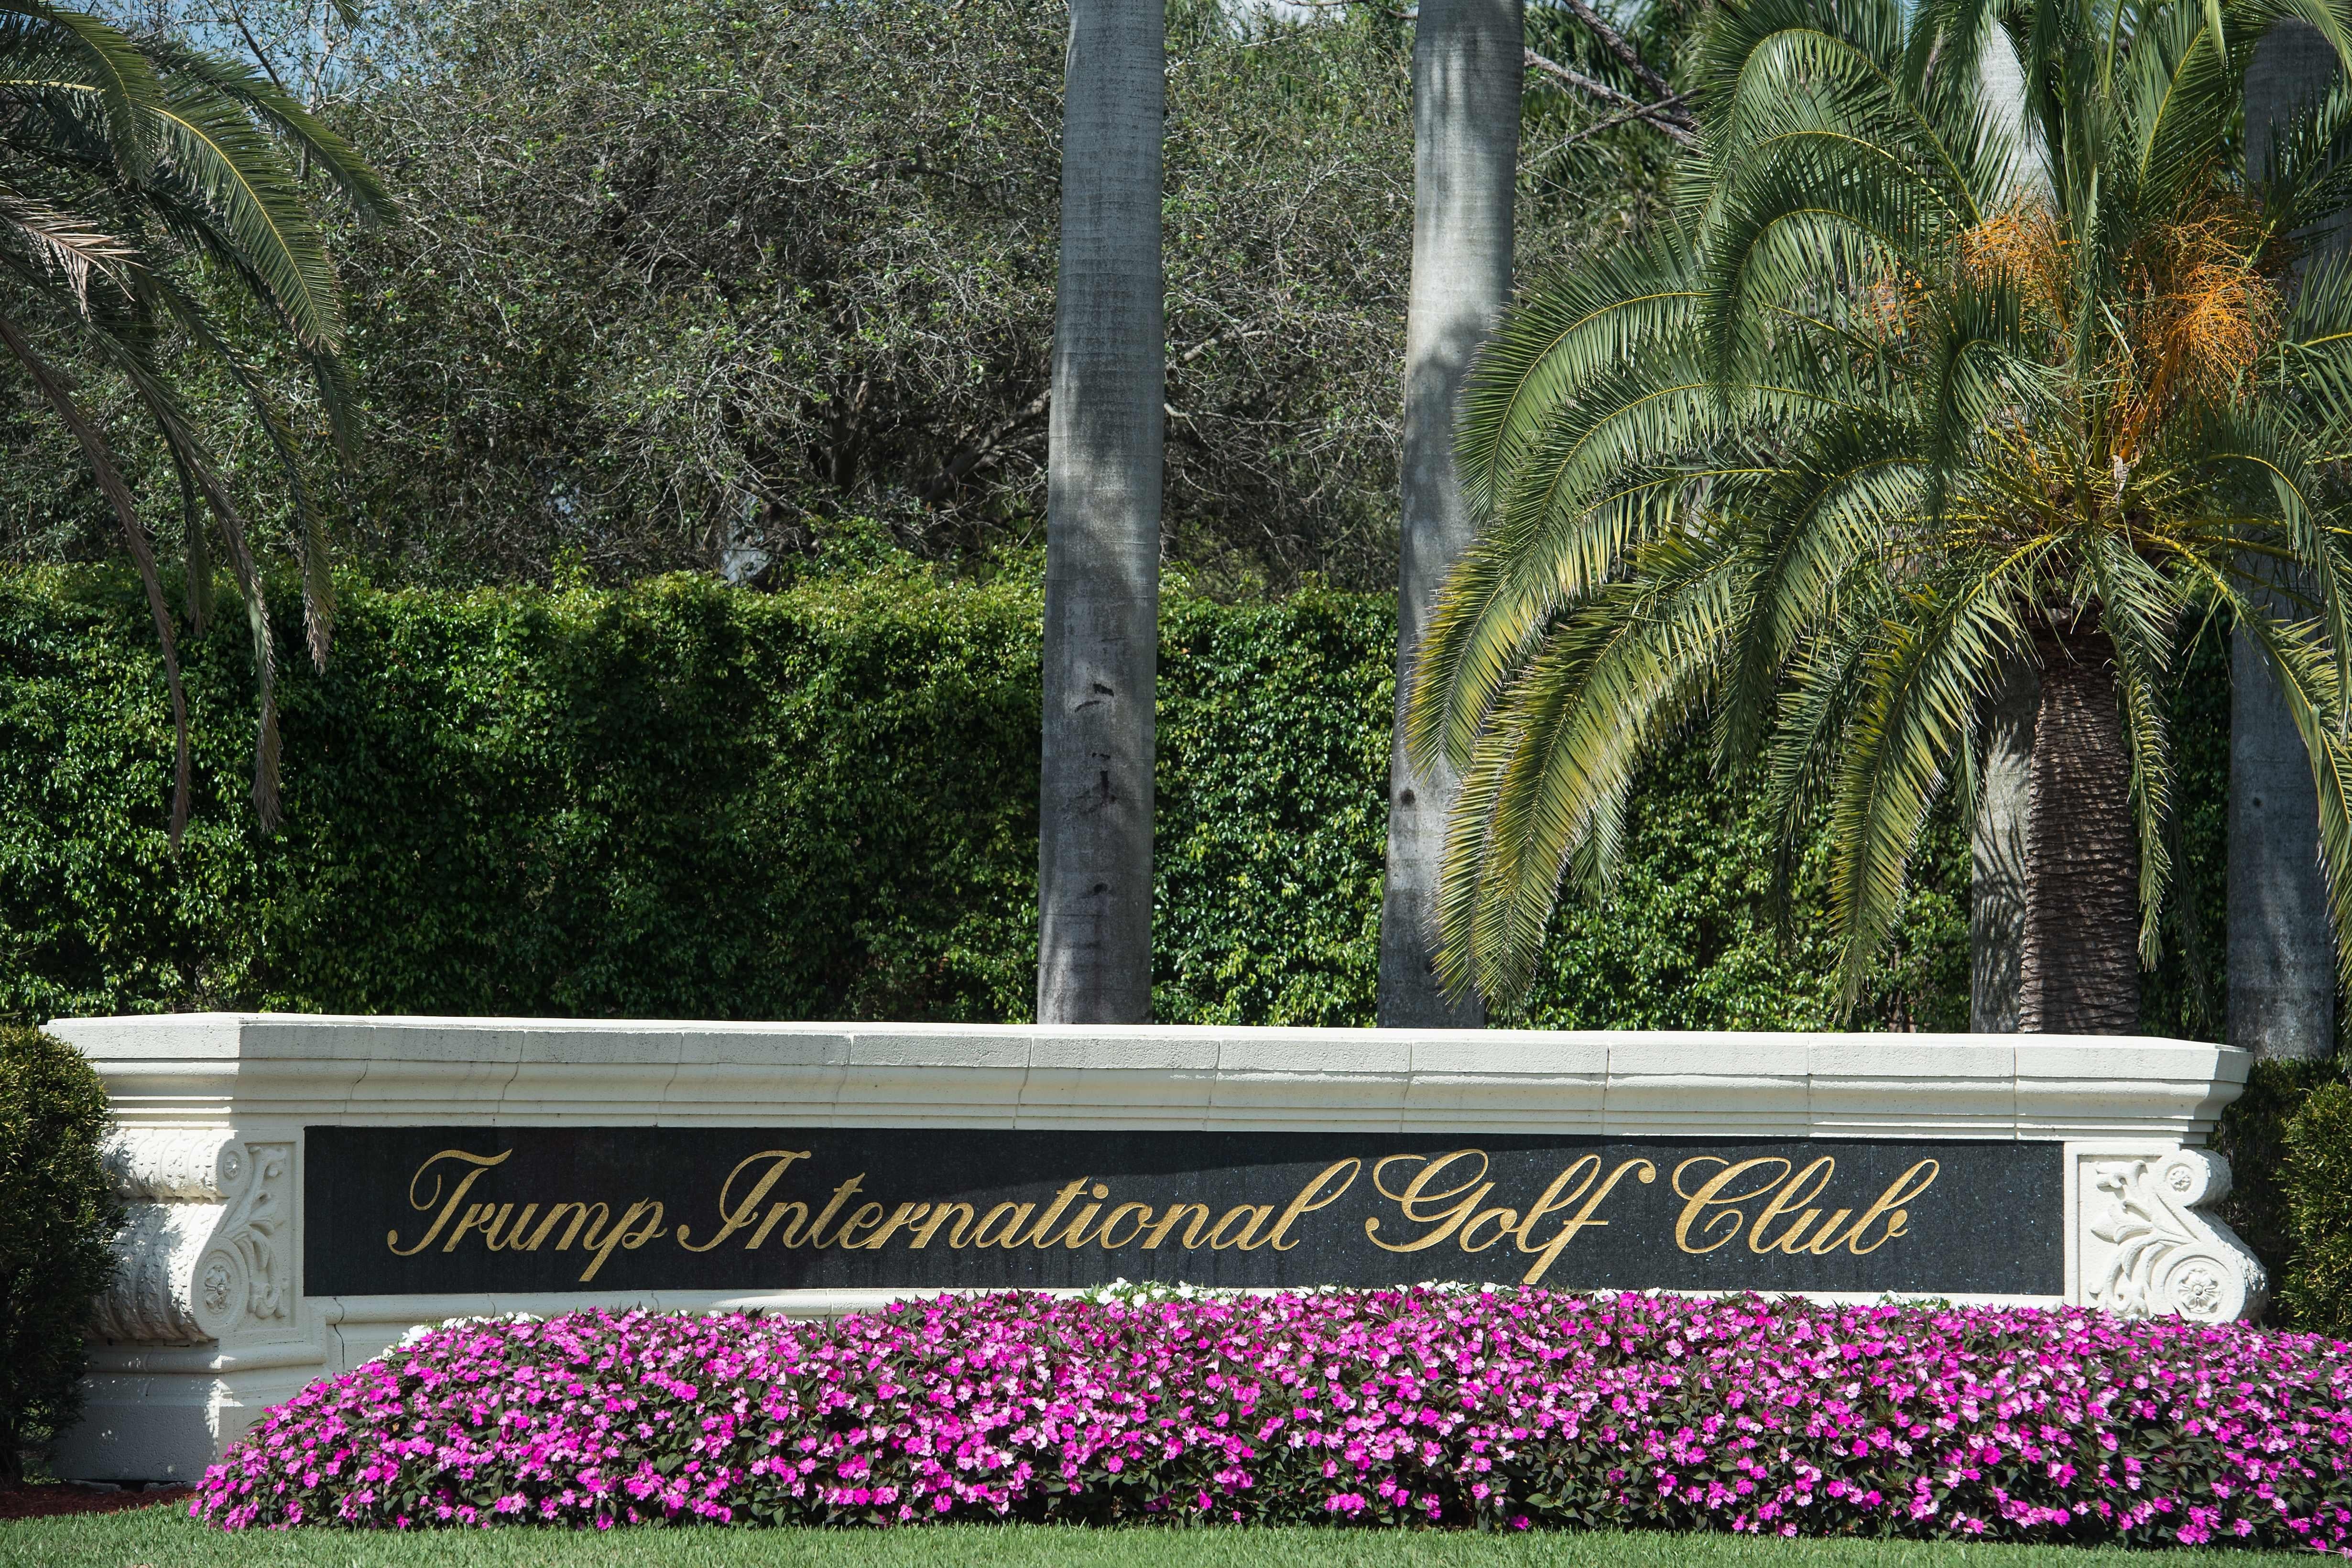 The Trump International Golf Club entrance